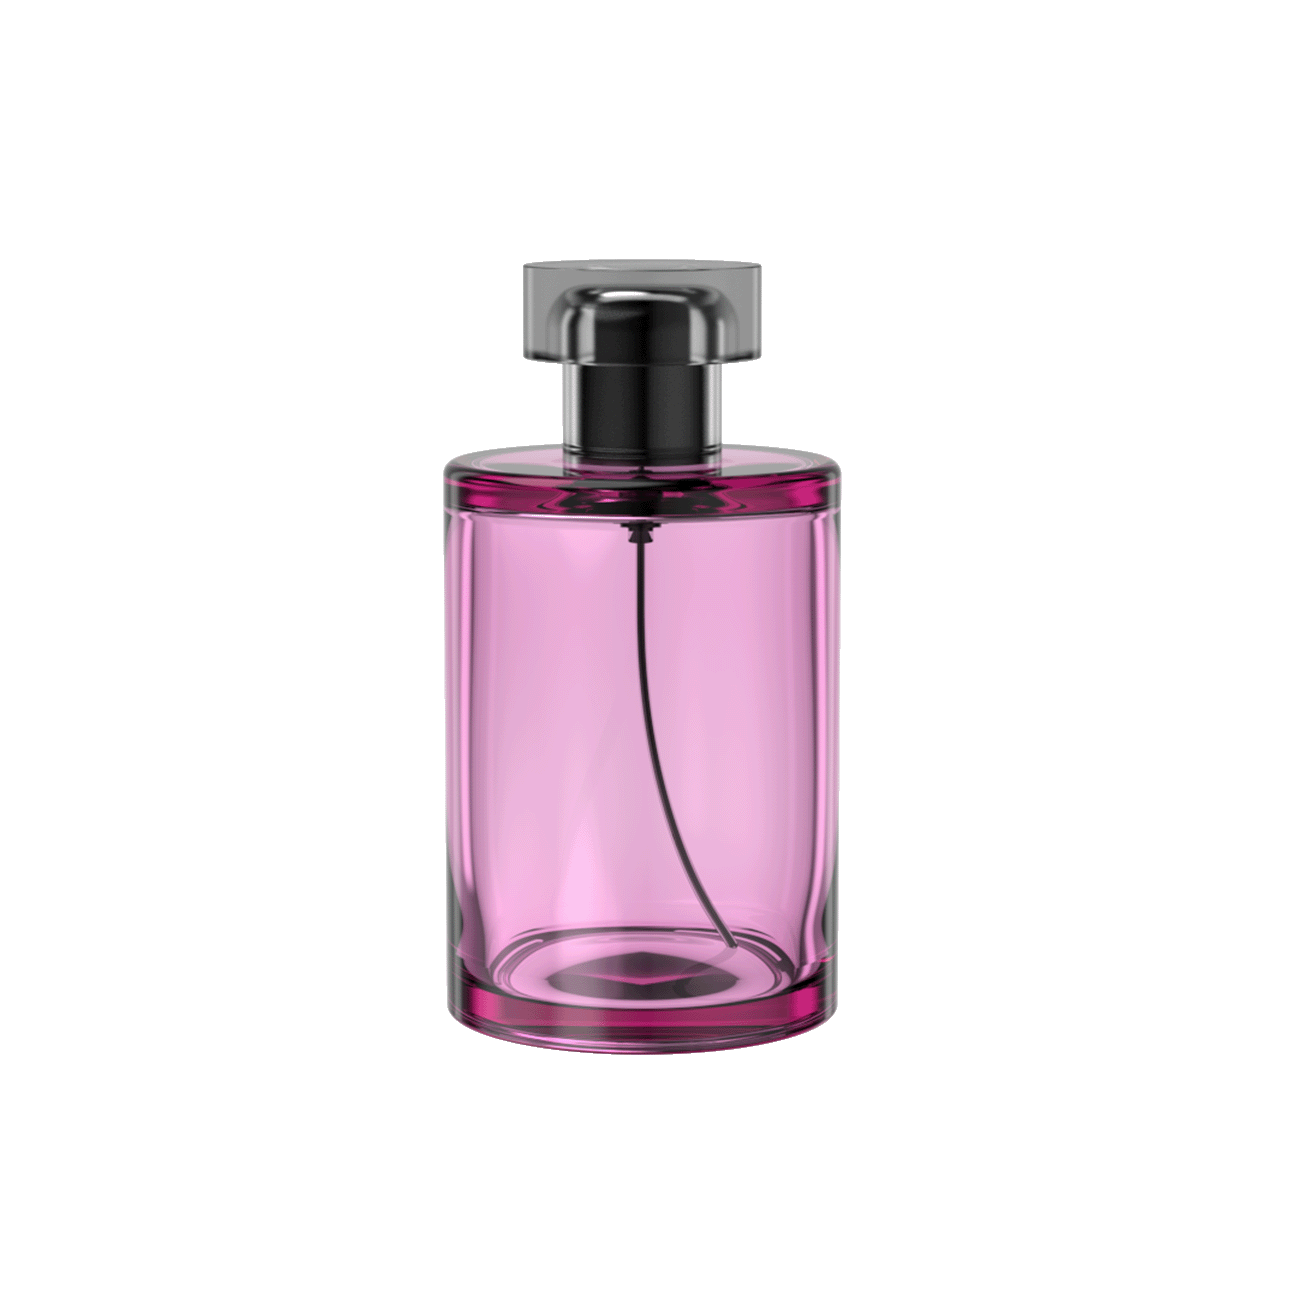 Round Glass Perfume PKG 6's thumbnail image